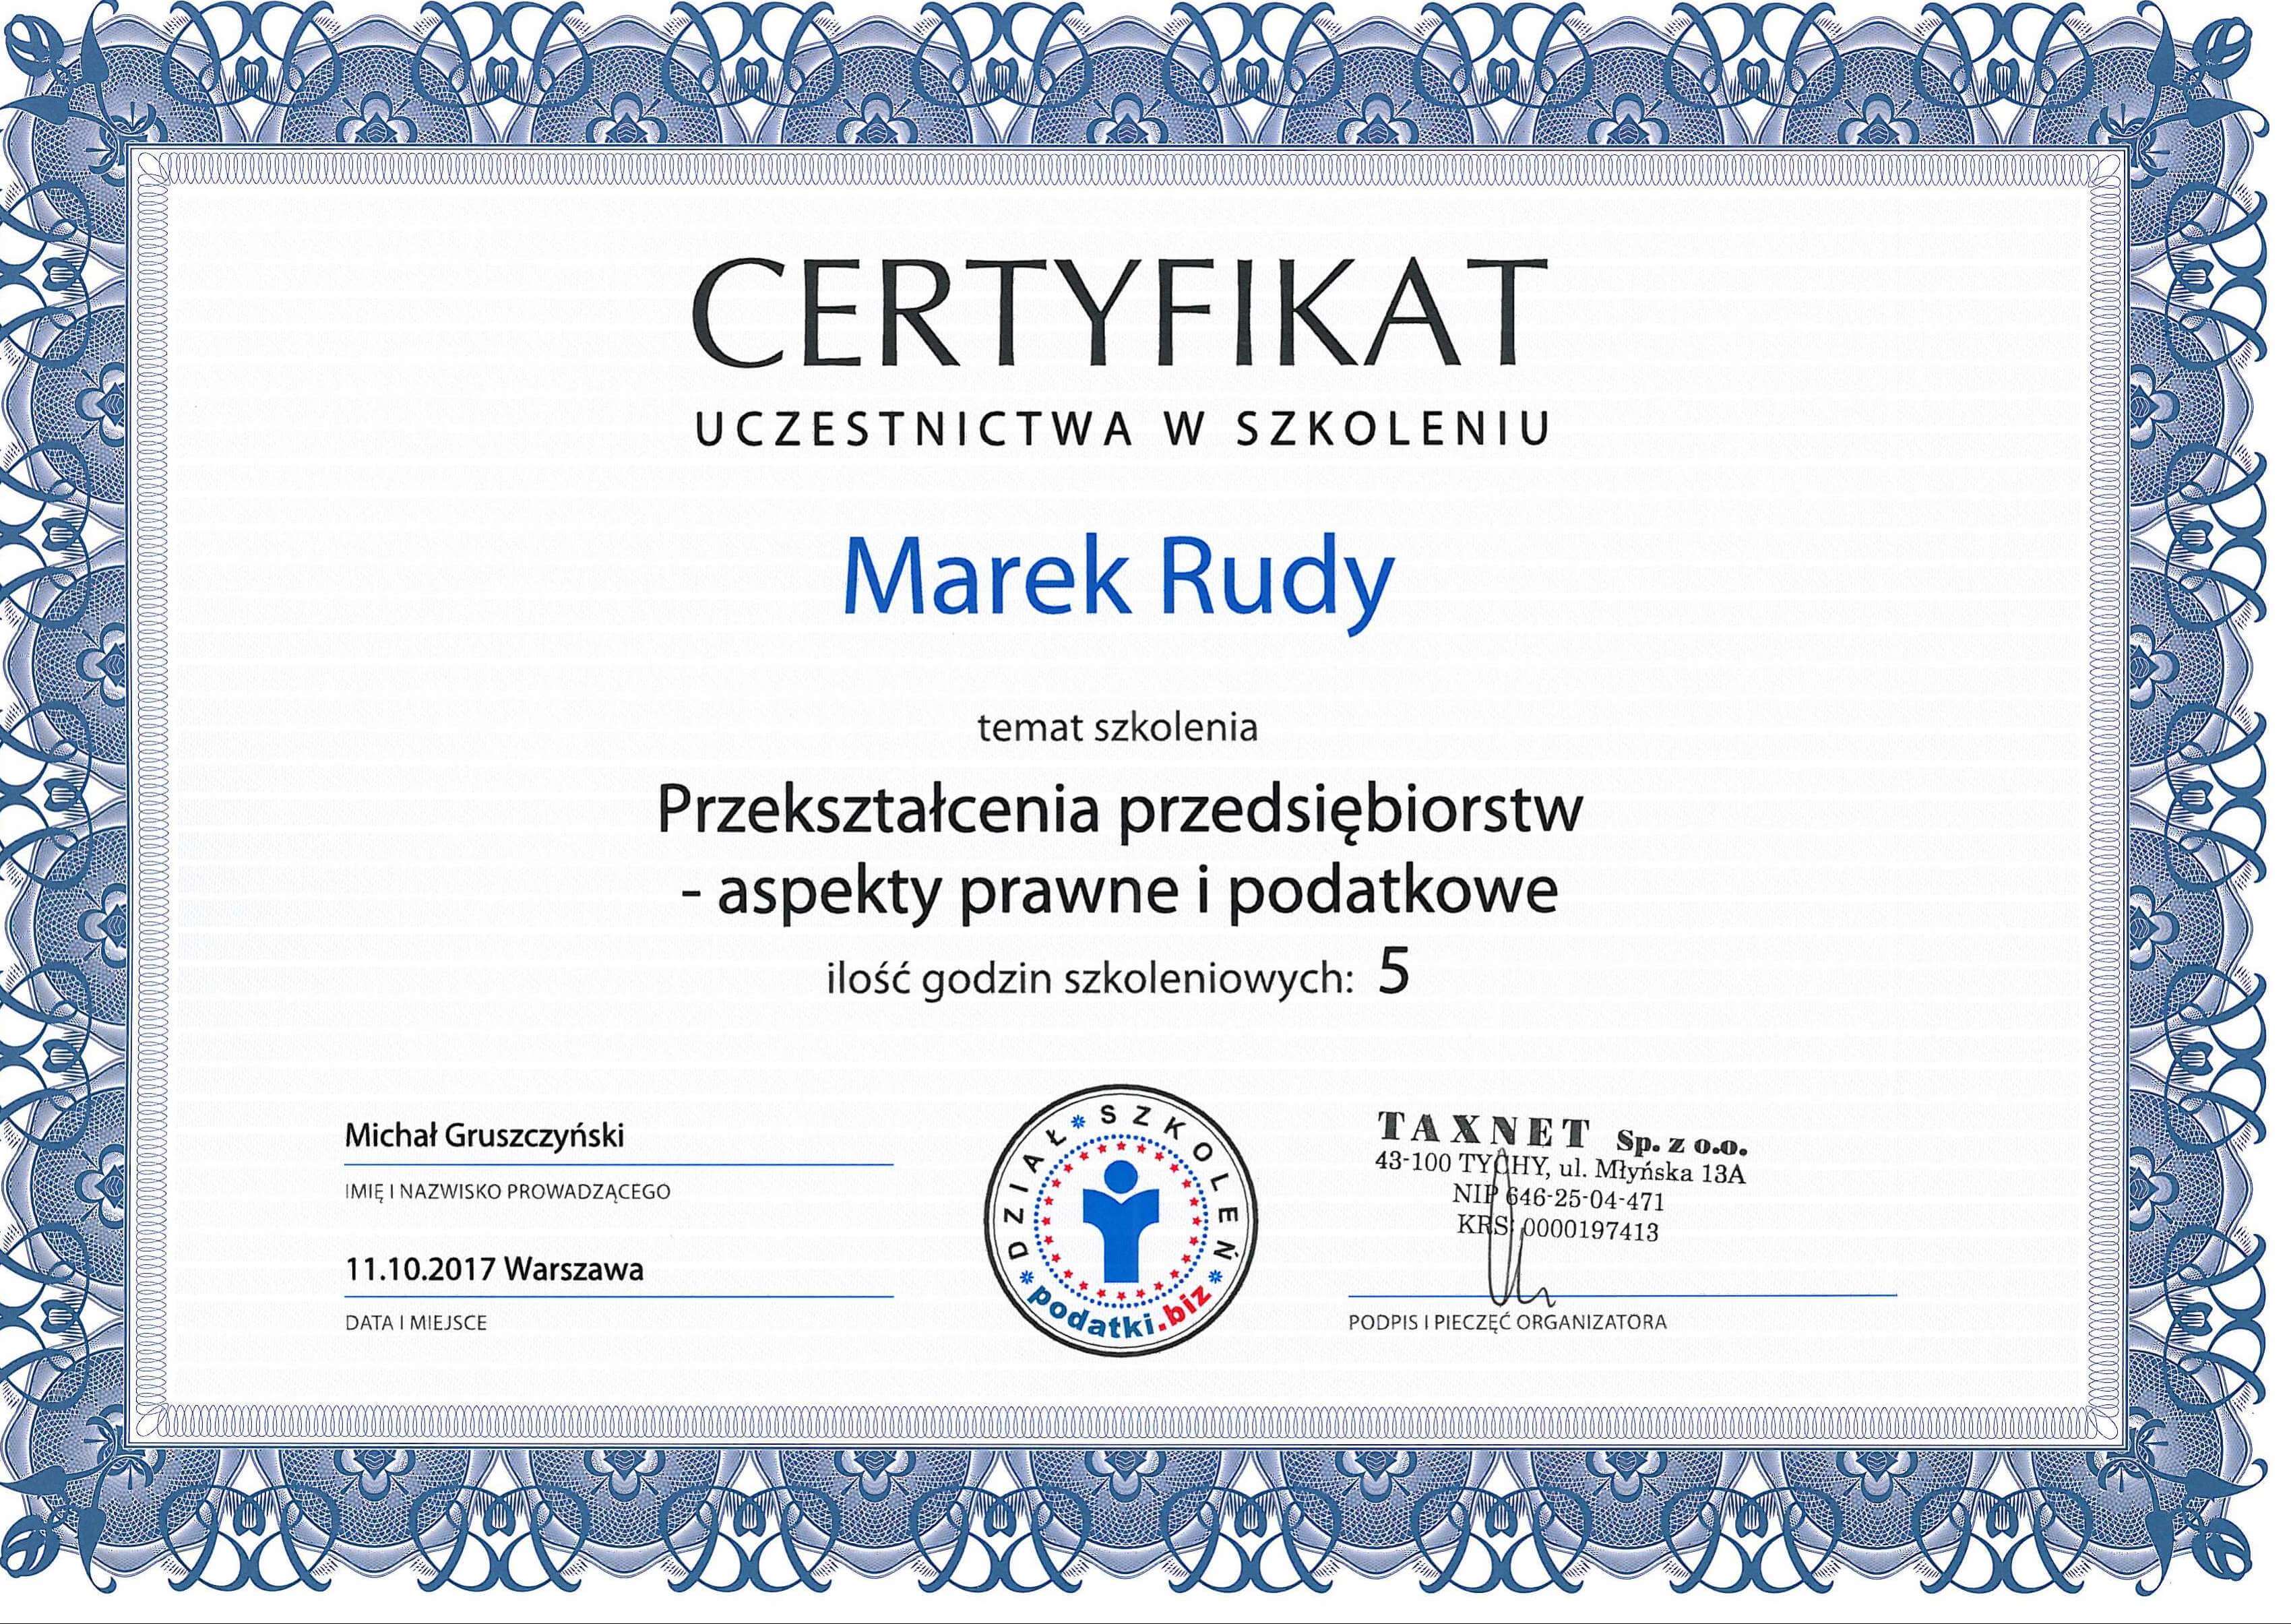 Certyfikat szkolenia przekształcenia przedsiębiorców Marek Rudy Exor groupLublin zespół ekspertów biznesowych mdr consulting